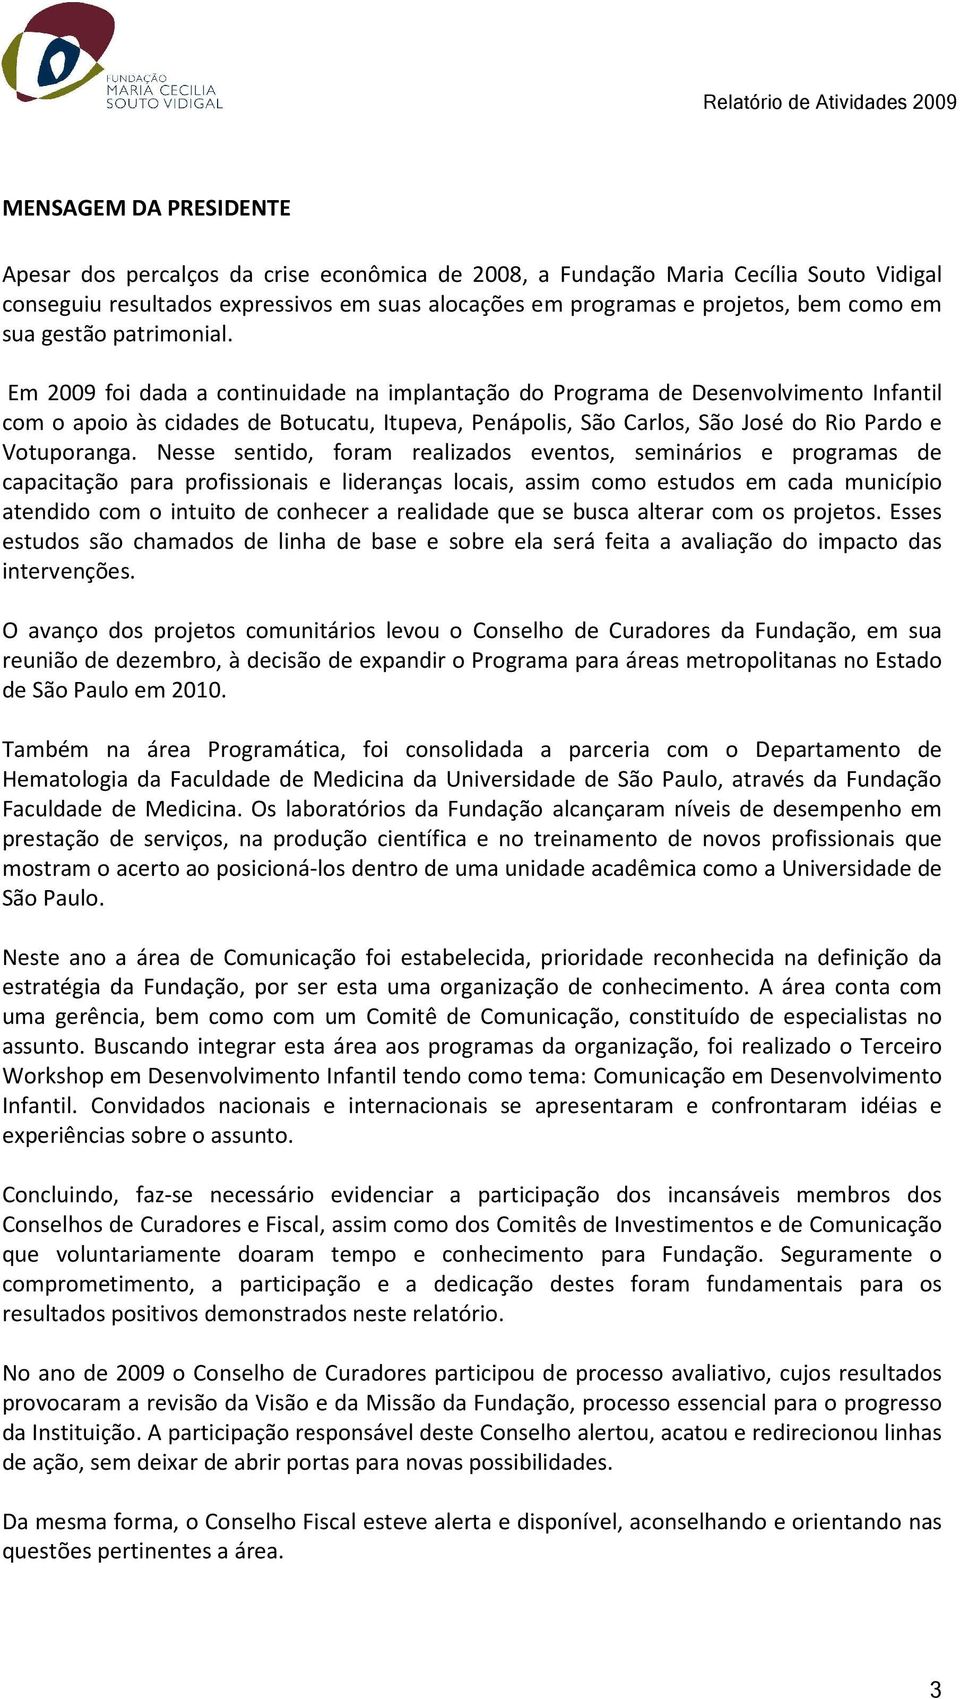 Em 2009 foi dada a continuidade na implantação do Programa de Desenvolvimento Infantil com o apoio às cidades de Botucatu, Itupeva, Penápolis, São Carlos, São José do Rio Pardo e Votuporanga.